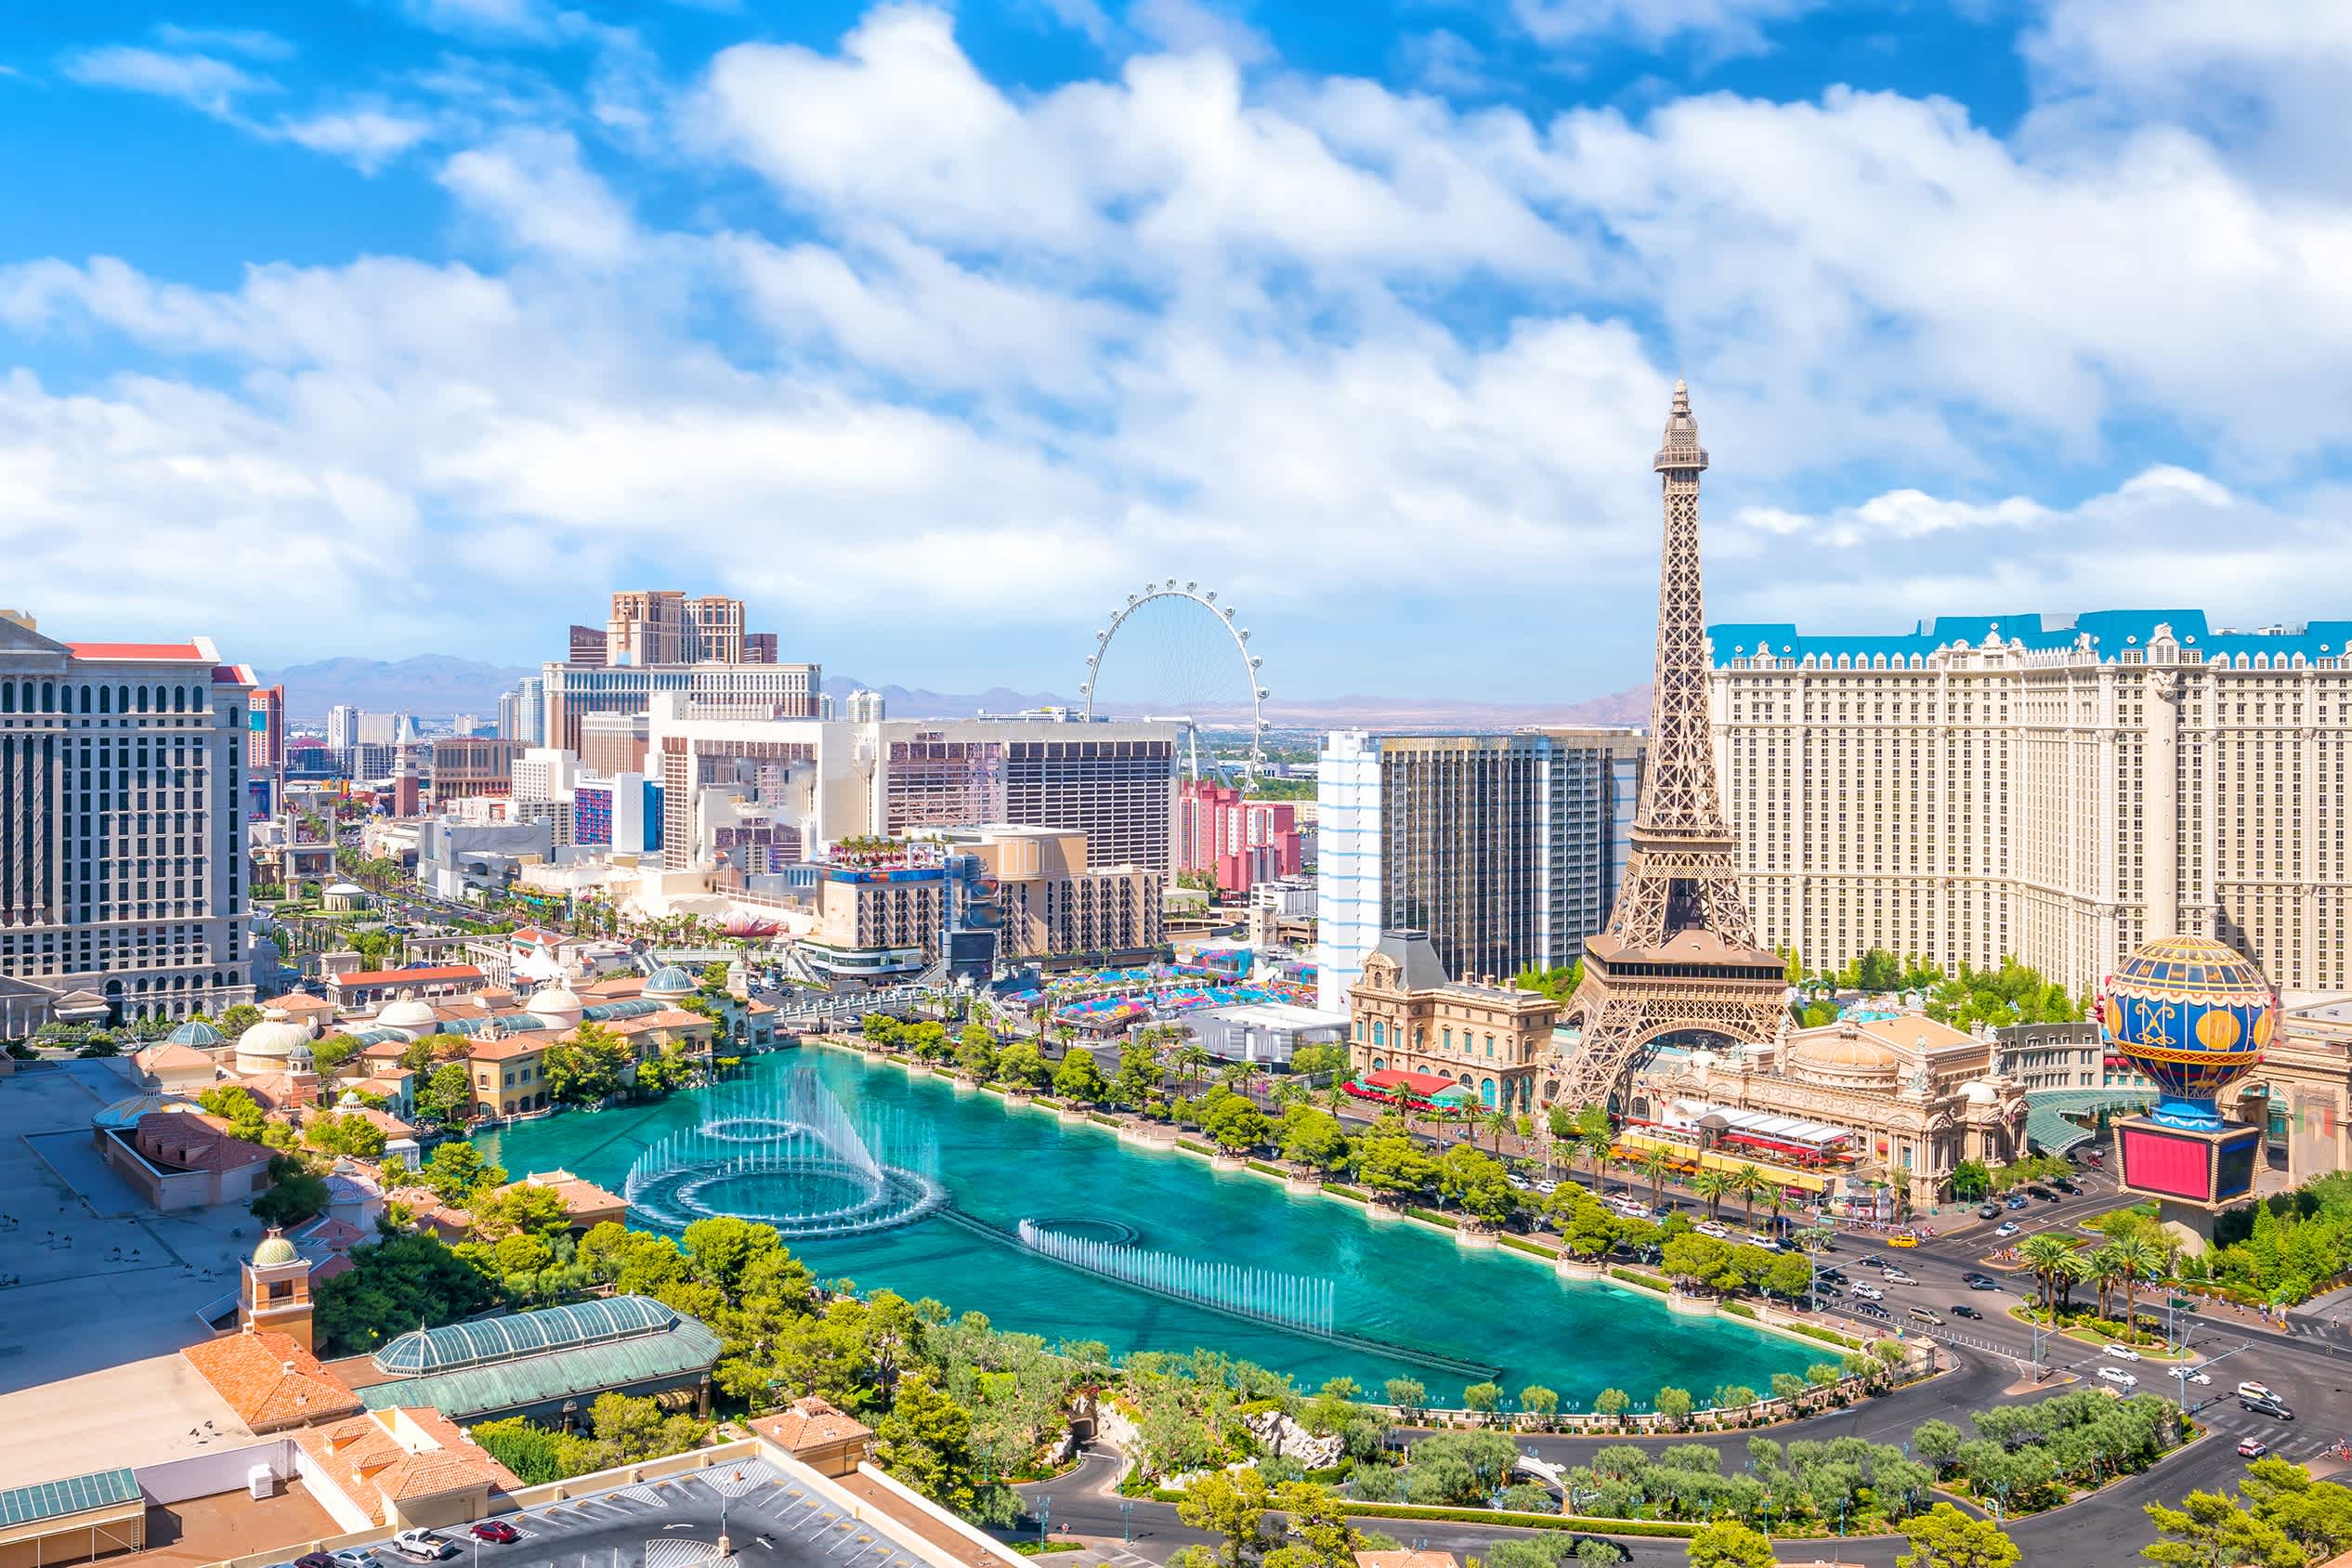 Vue de la ville de Las Vegas avec la Tour Eiffel et une grande fontaine.